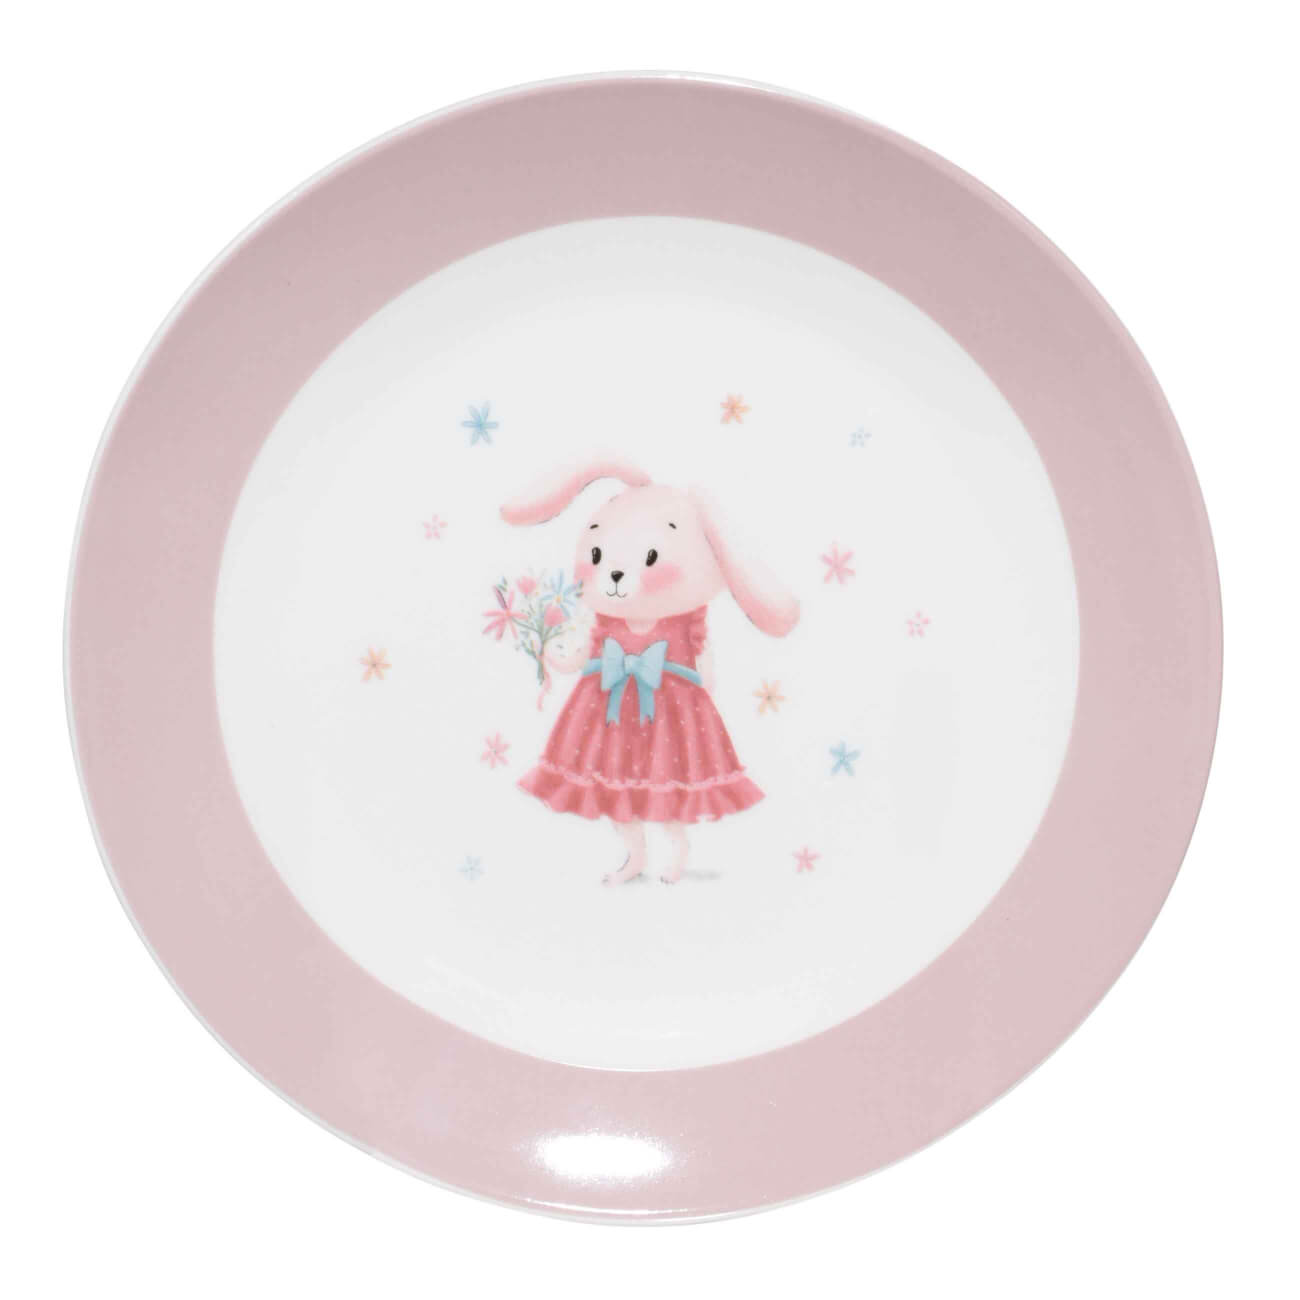 Тарелка закусочная, детская, 19 см, фарфор N, бело-розовая, Крольчиха с цветами, Ideas life корзина stg hl bs01 8 детская розовая х95752